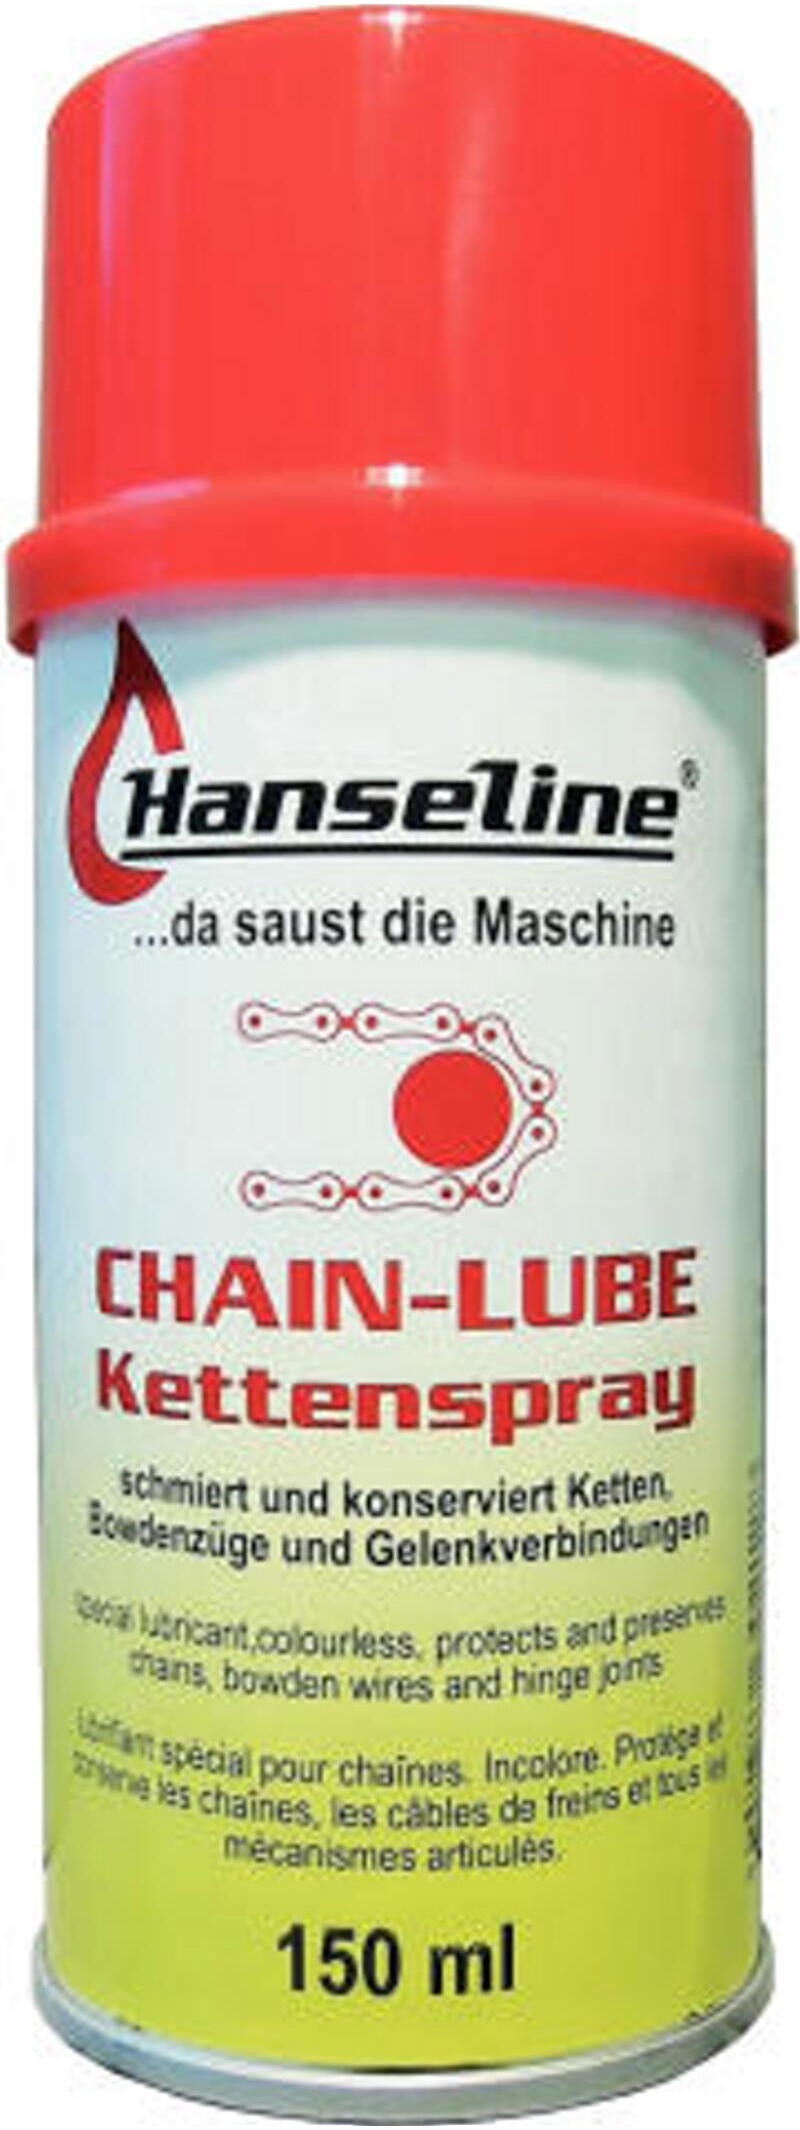 Hanseline Kettenspray 150ml Größe: 150 ml